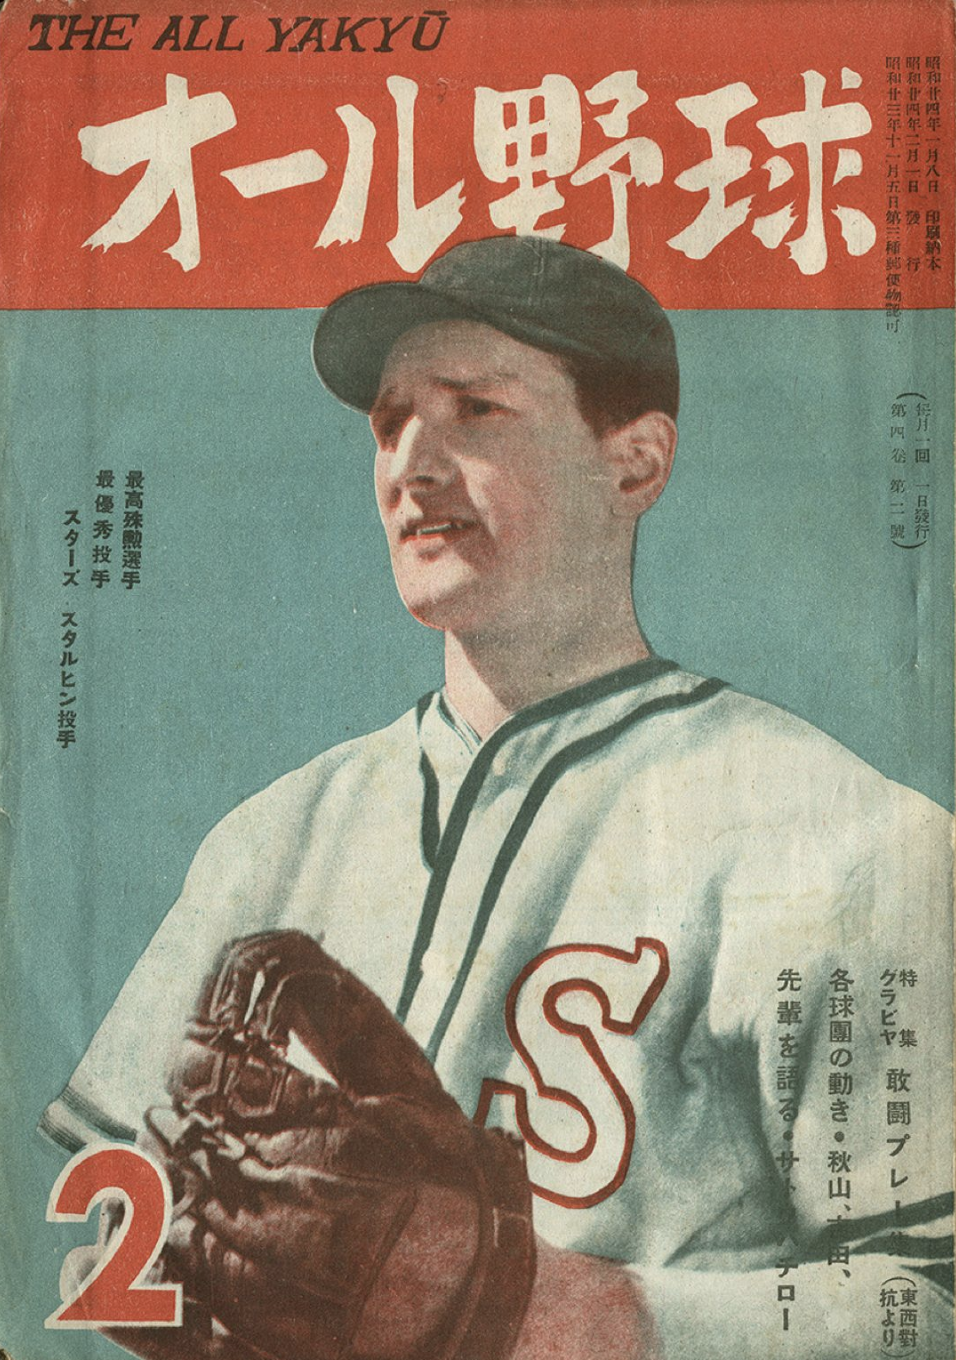 Виктор Старухин: как стать звездой бейсбола, а потом врагом народа в Японии